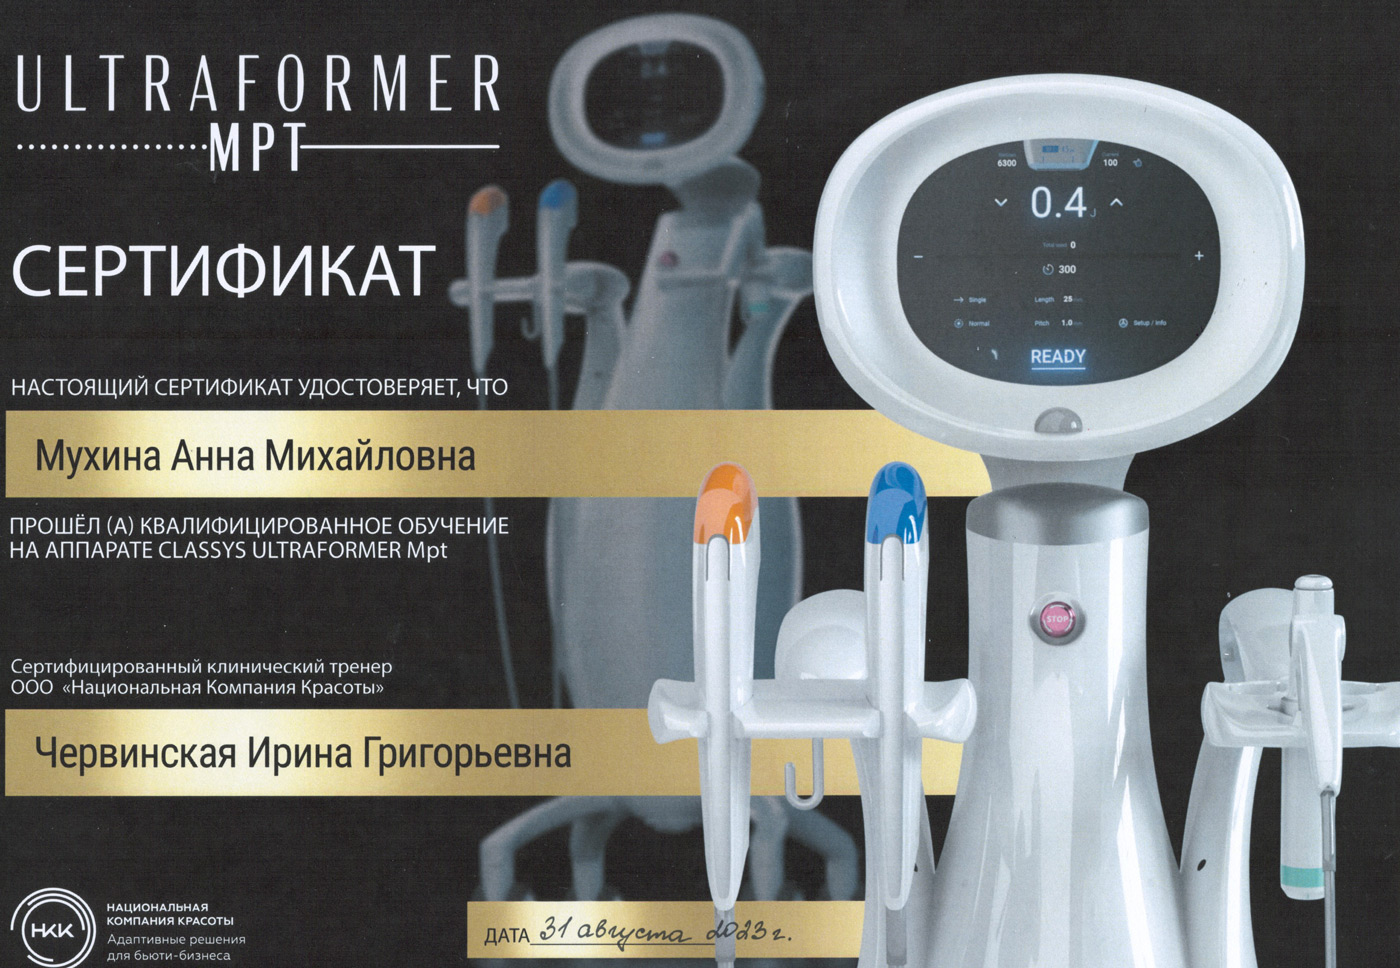 Сертификат — «Квалифицированное обучение на аппарате Classys Ultraformer MPT». Мухина Анна Михайловна